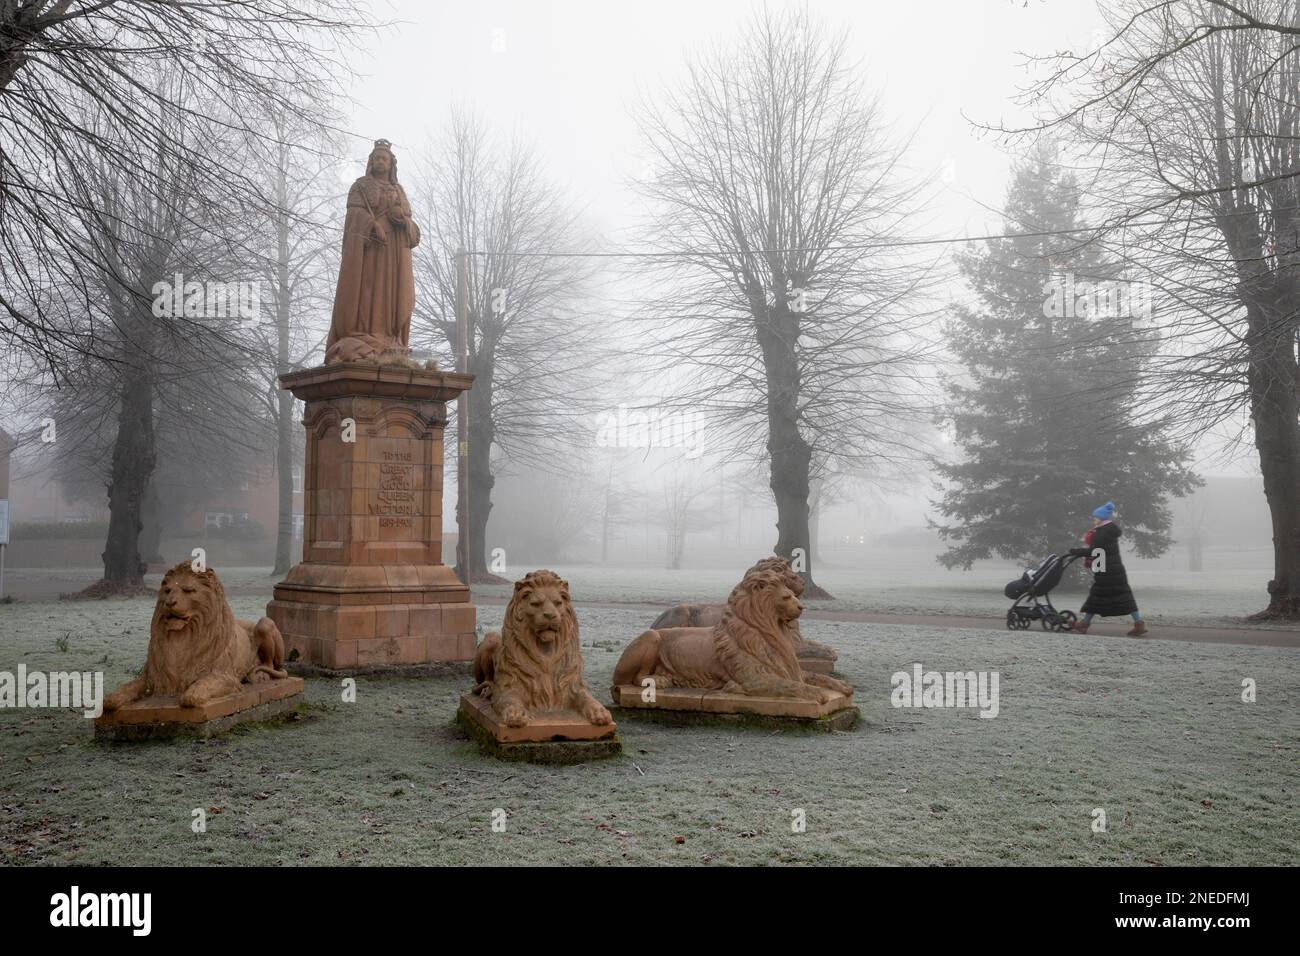 Statue de la reine Victoria dans un brouillard glacial le matin d'hiver à Victoria Park, Newbury, Berkshire, Angleterre, Royaume-Uni, Europe Banque D'Images